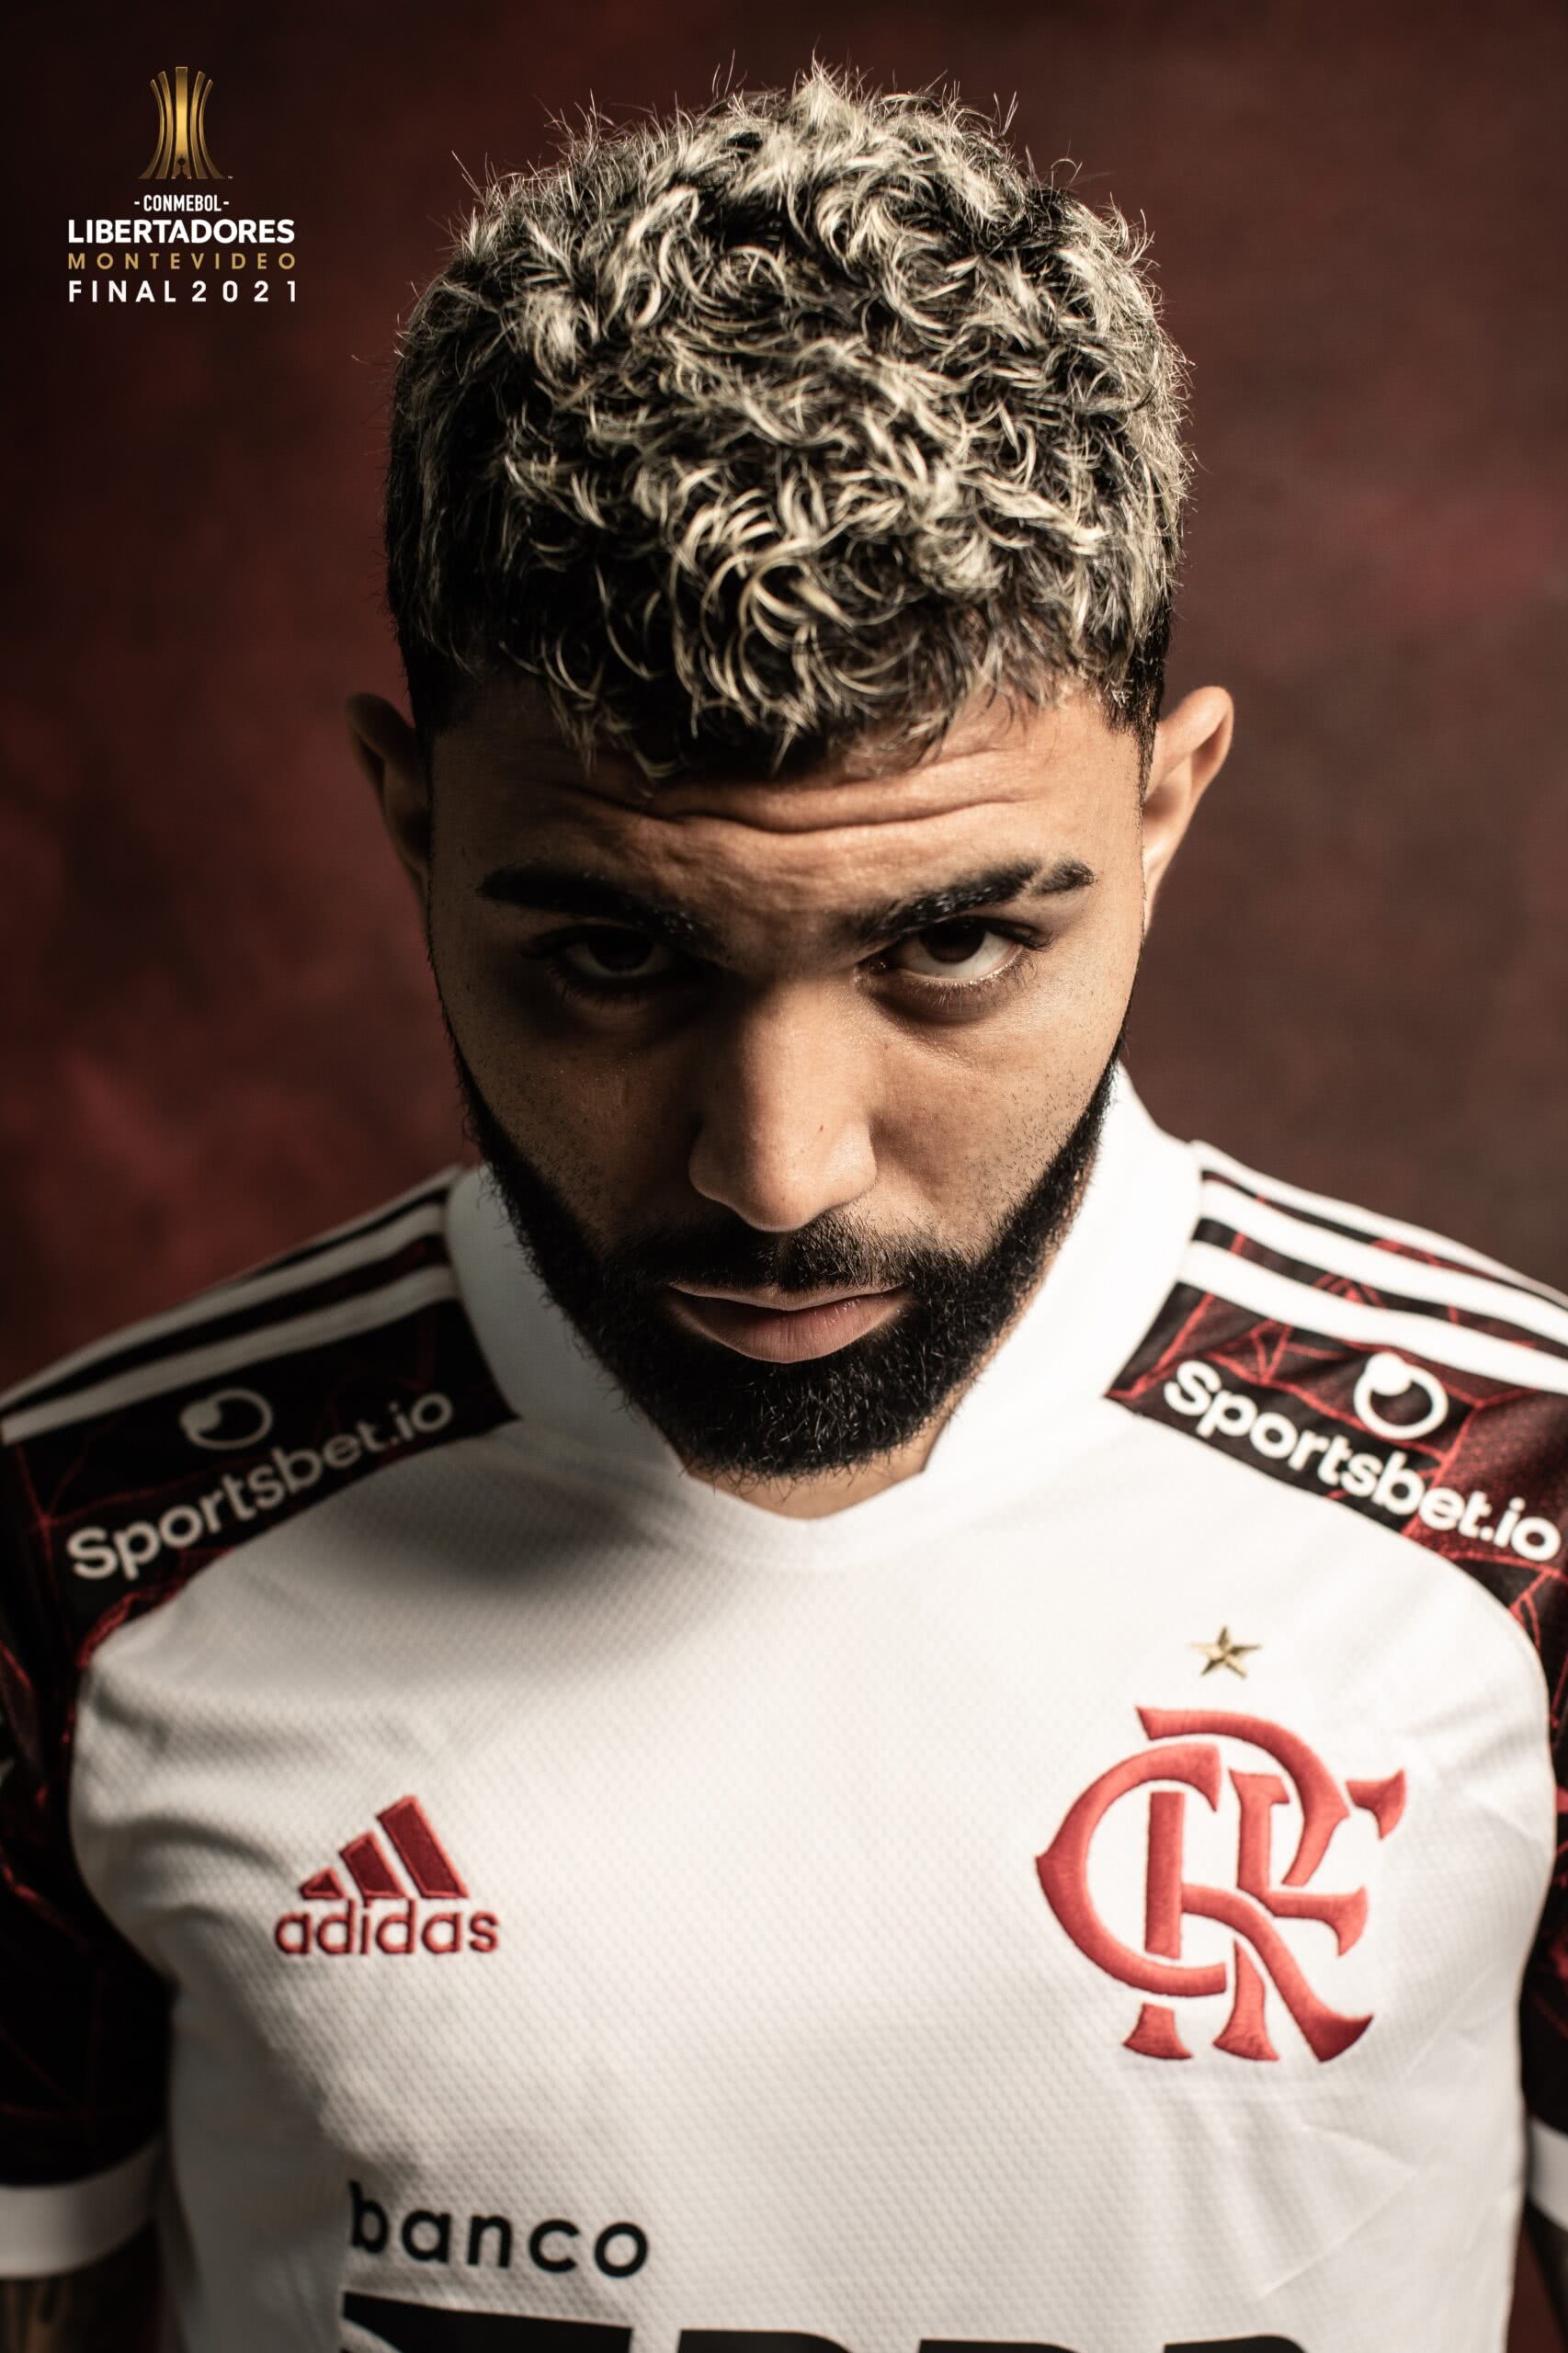 Flamengo: Nem tudo em 2021 foi perdido